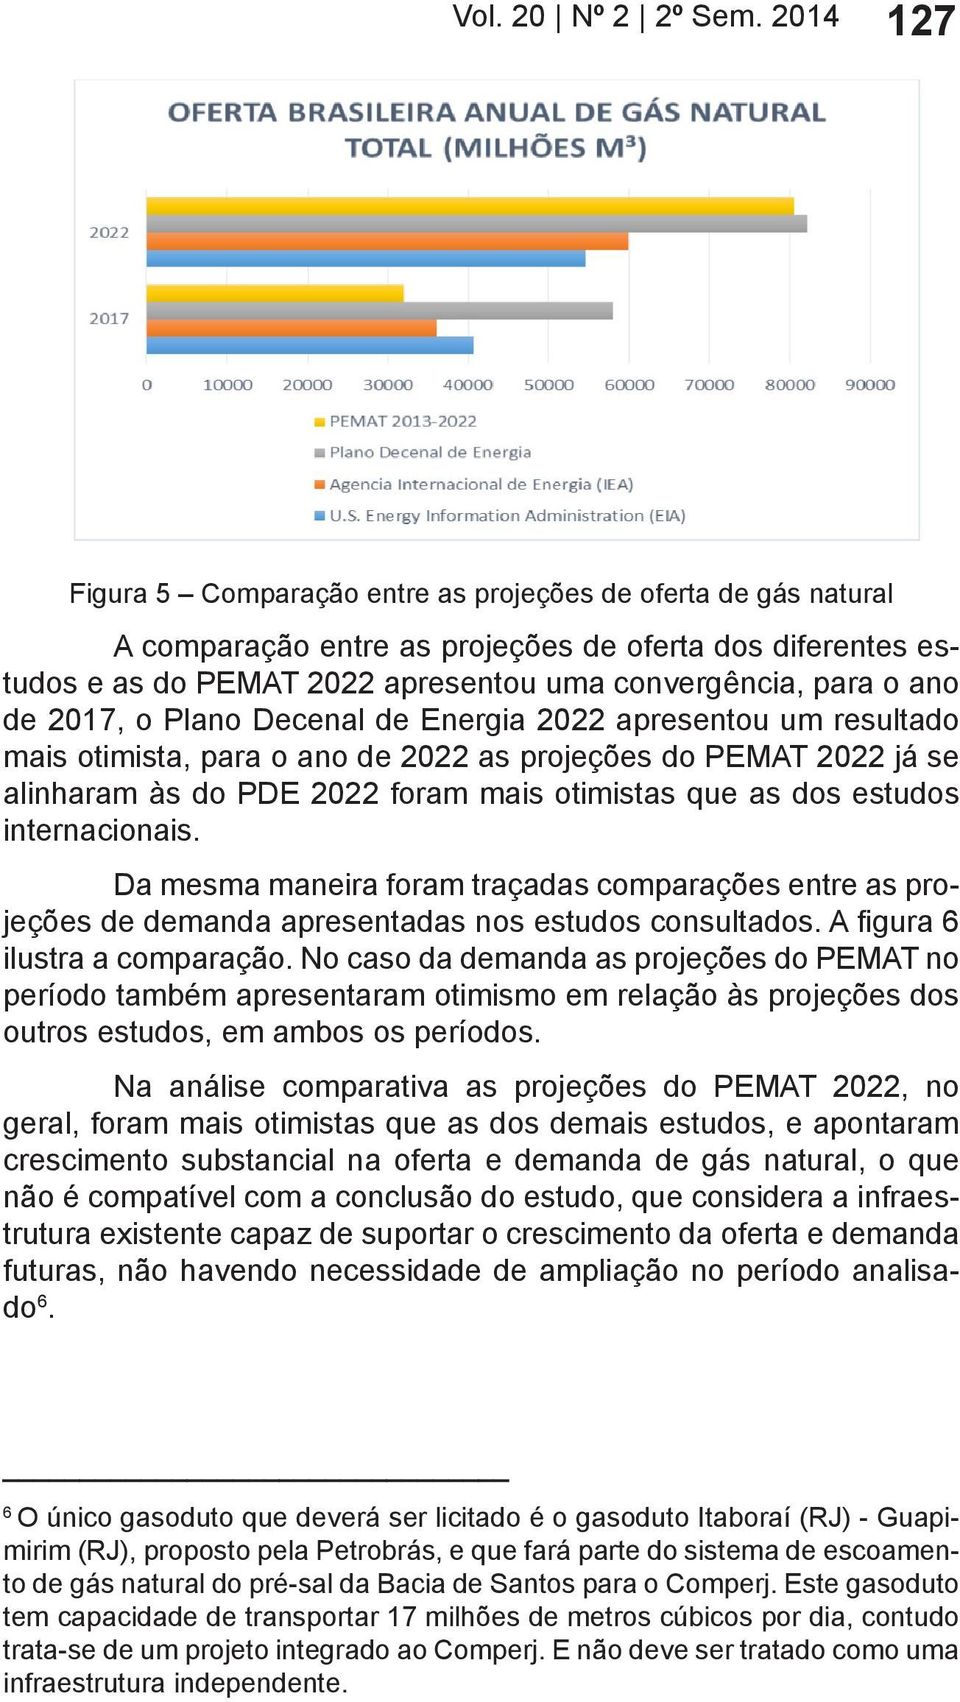 2017, o Plano Decenal de Energia 2022 apresentou um resultado mais otimista, para o ano de 2022 as projeções do PEMAT 2022 já se alinharam às do PDE 2022 foram mais otimistas que as dos estudos